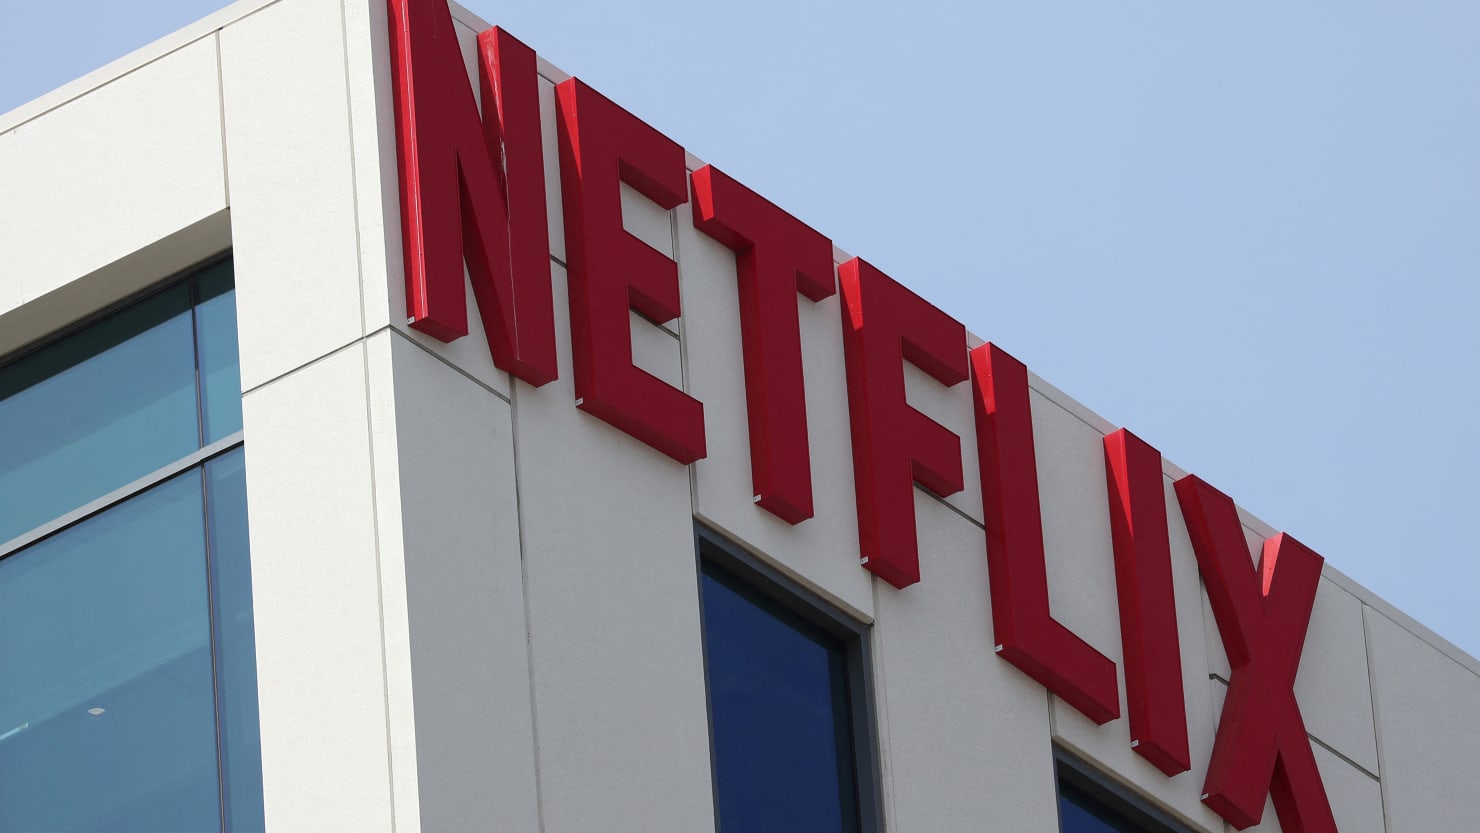 Netflix's Stock Nears A Breaking Point Following Weak Results